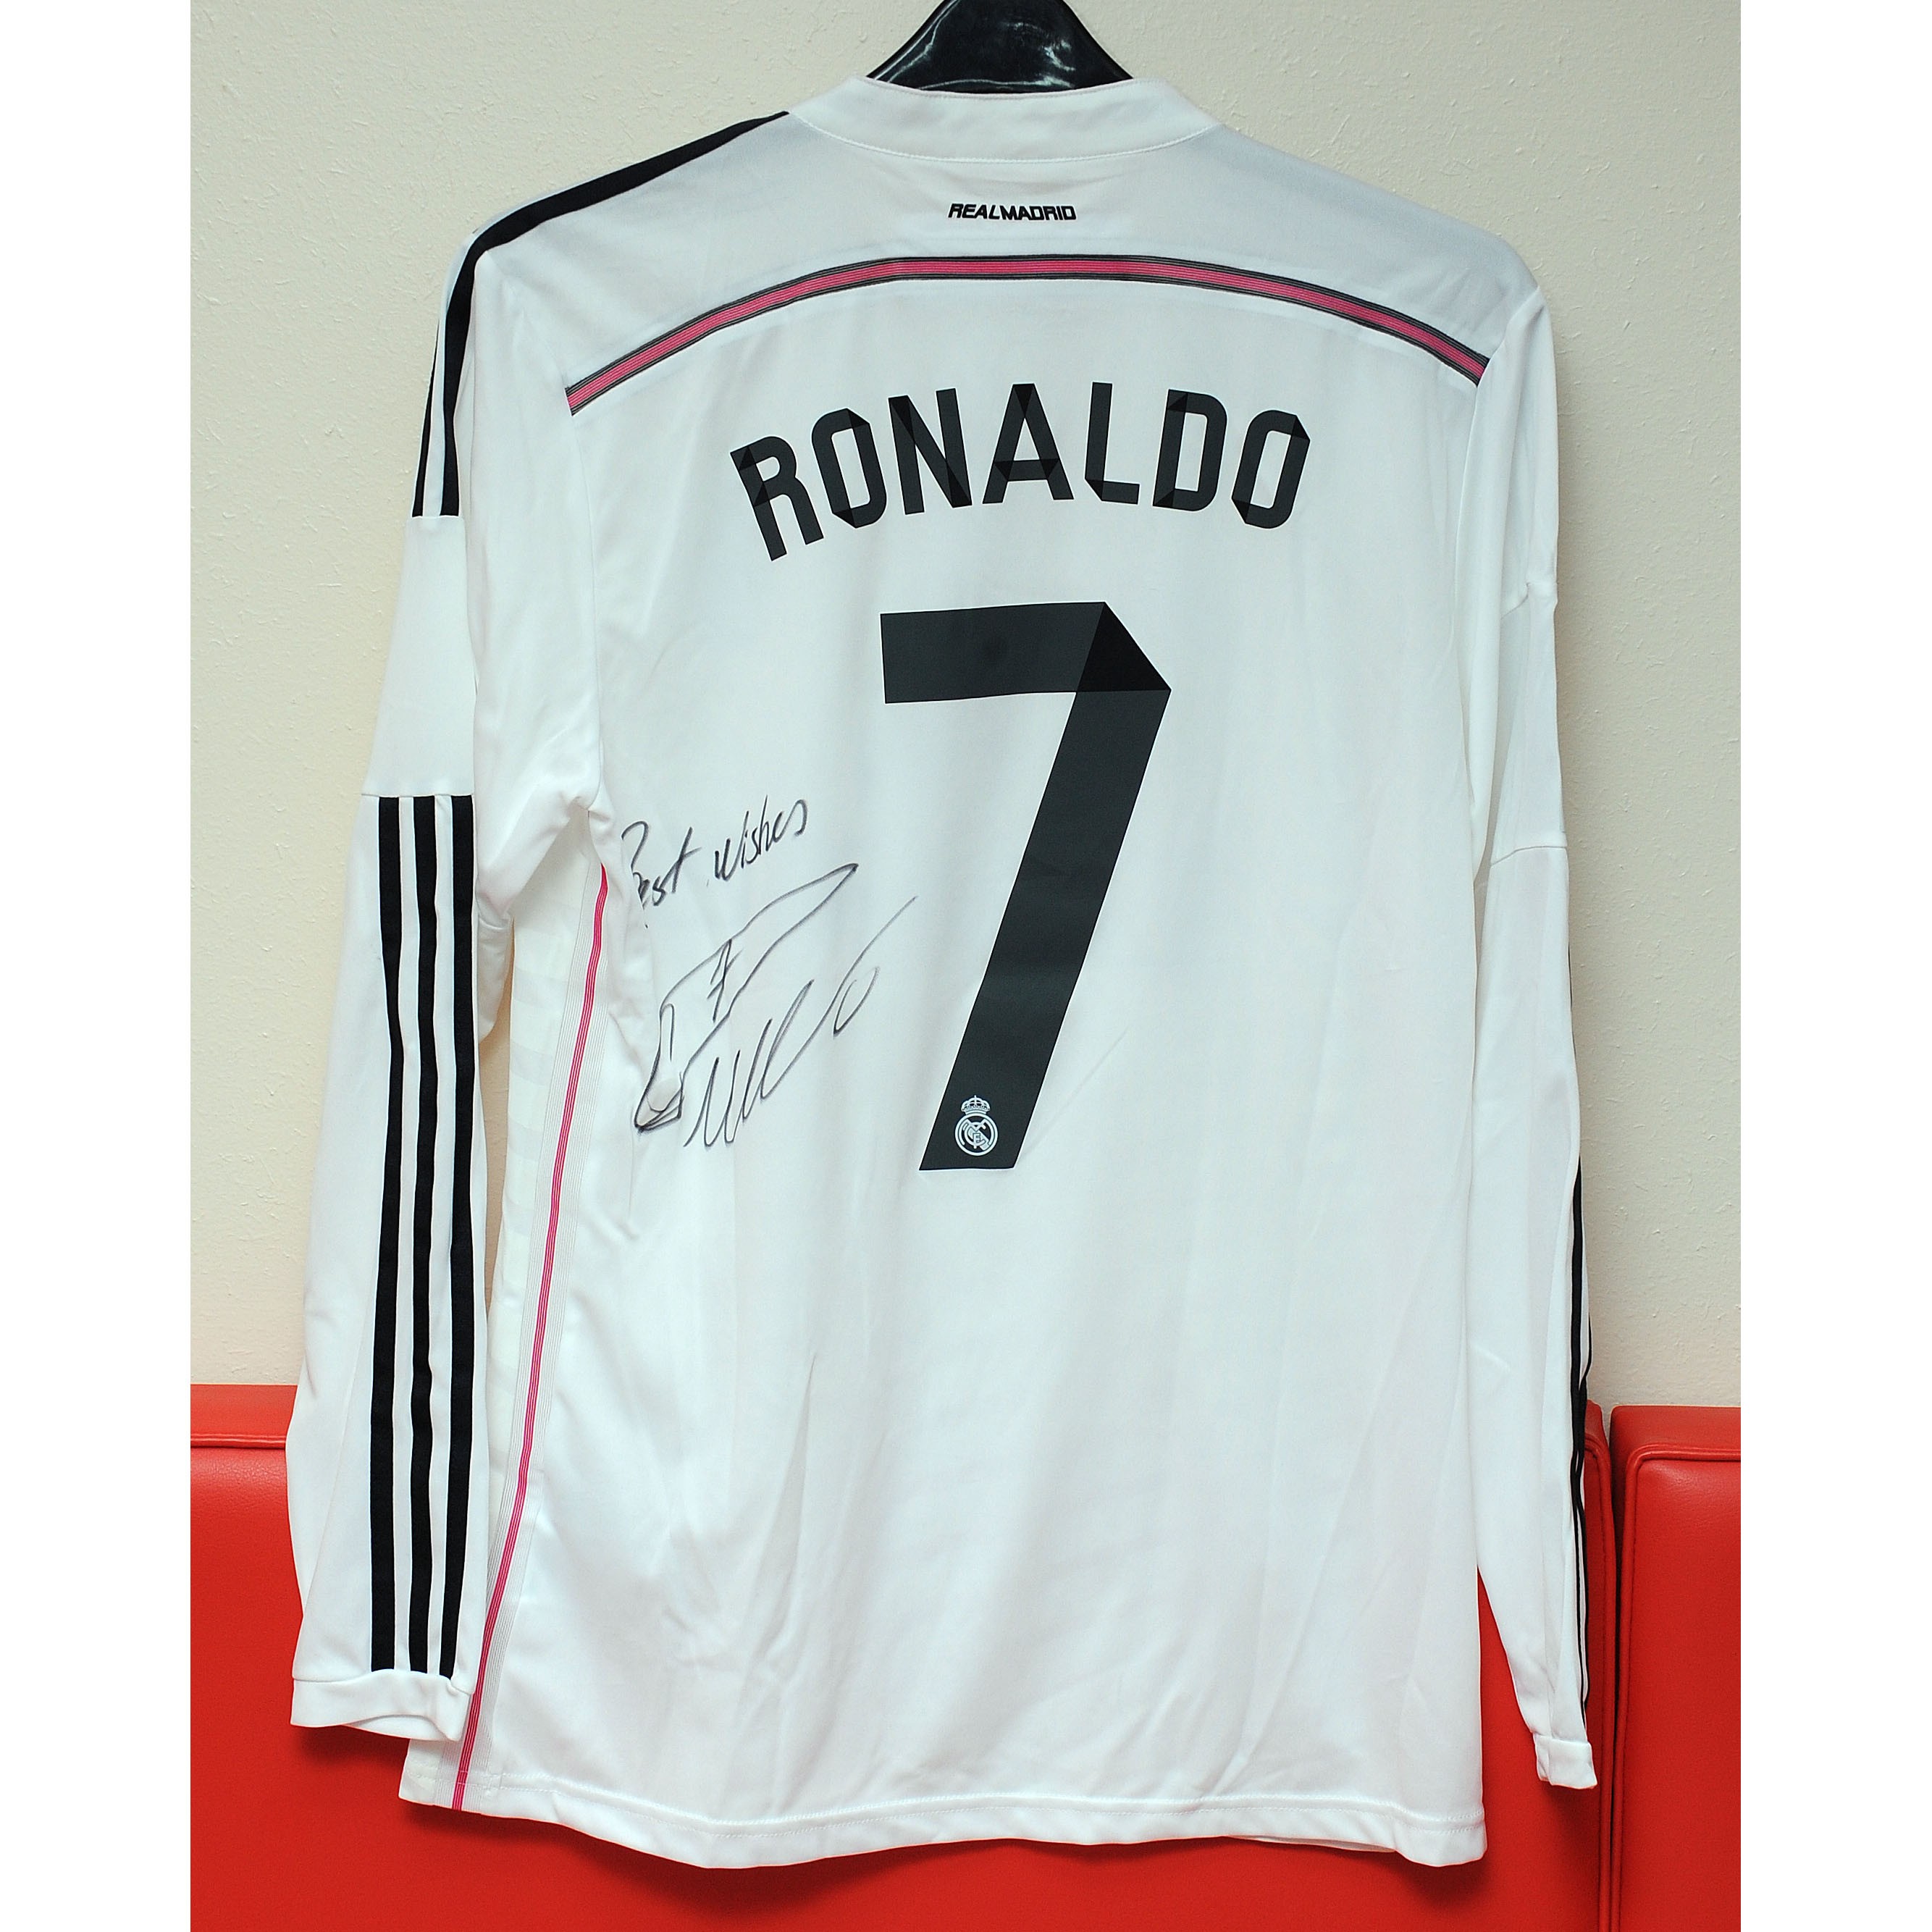 Real Madrid shirt signed by Cristiano Ronaldo - CharityStars